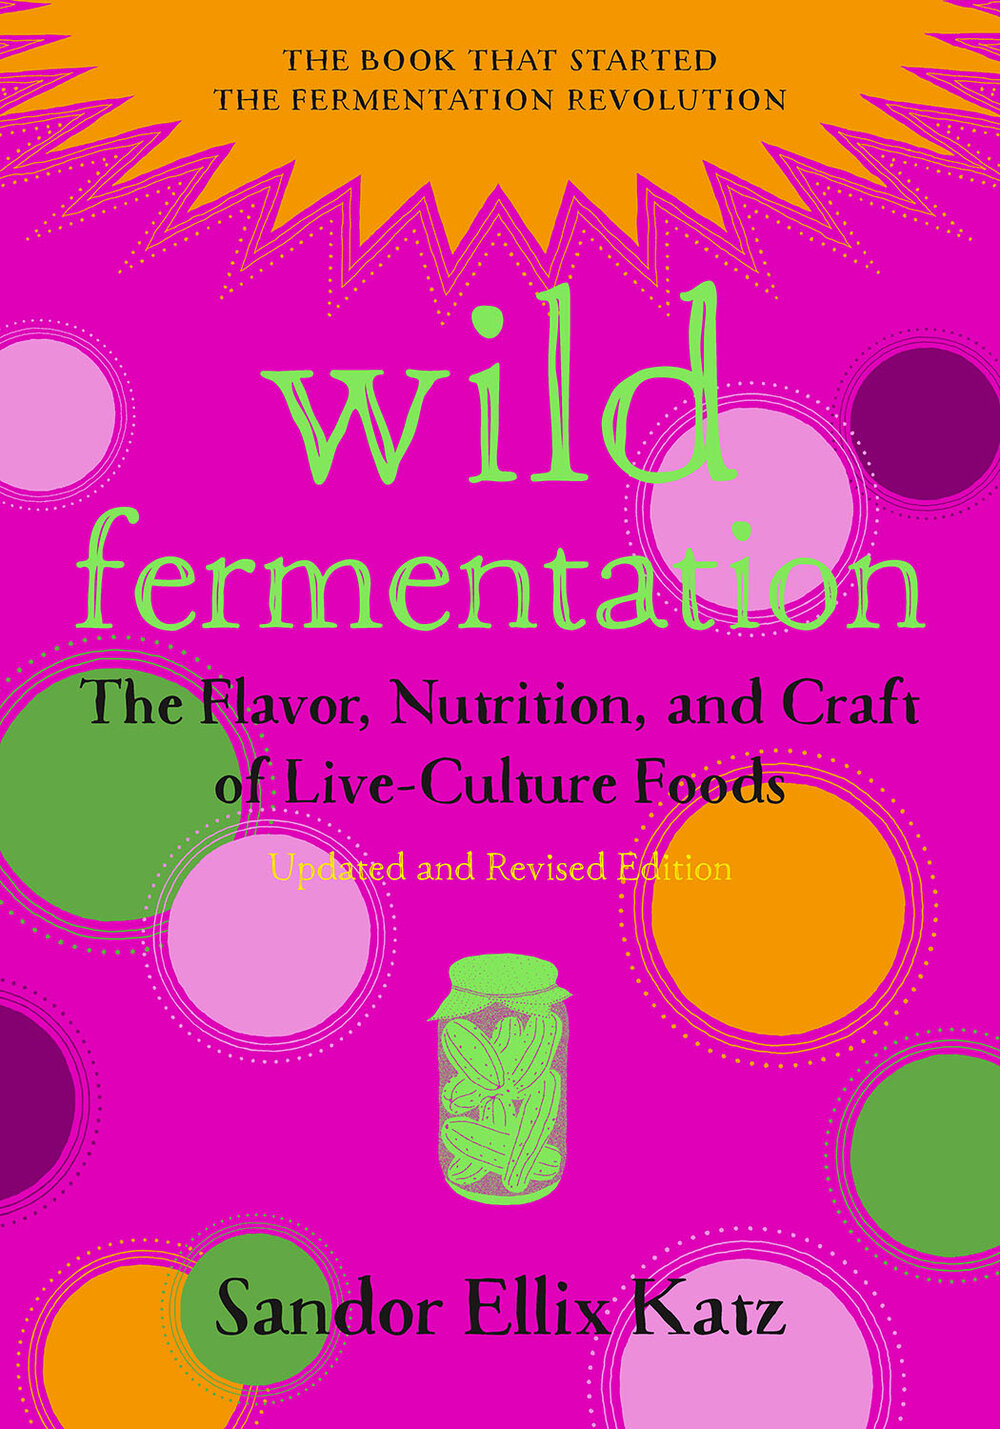 The Art of Fermentation: New York Times Bestseller